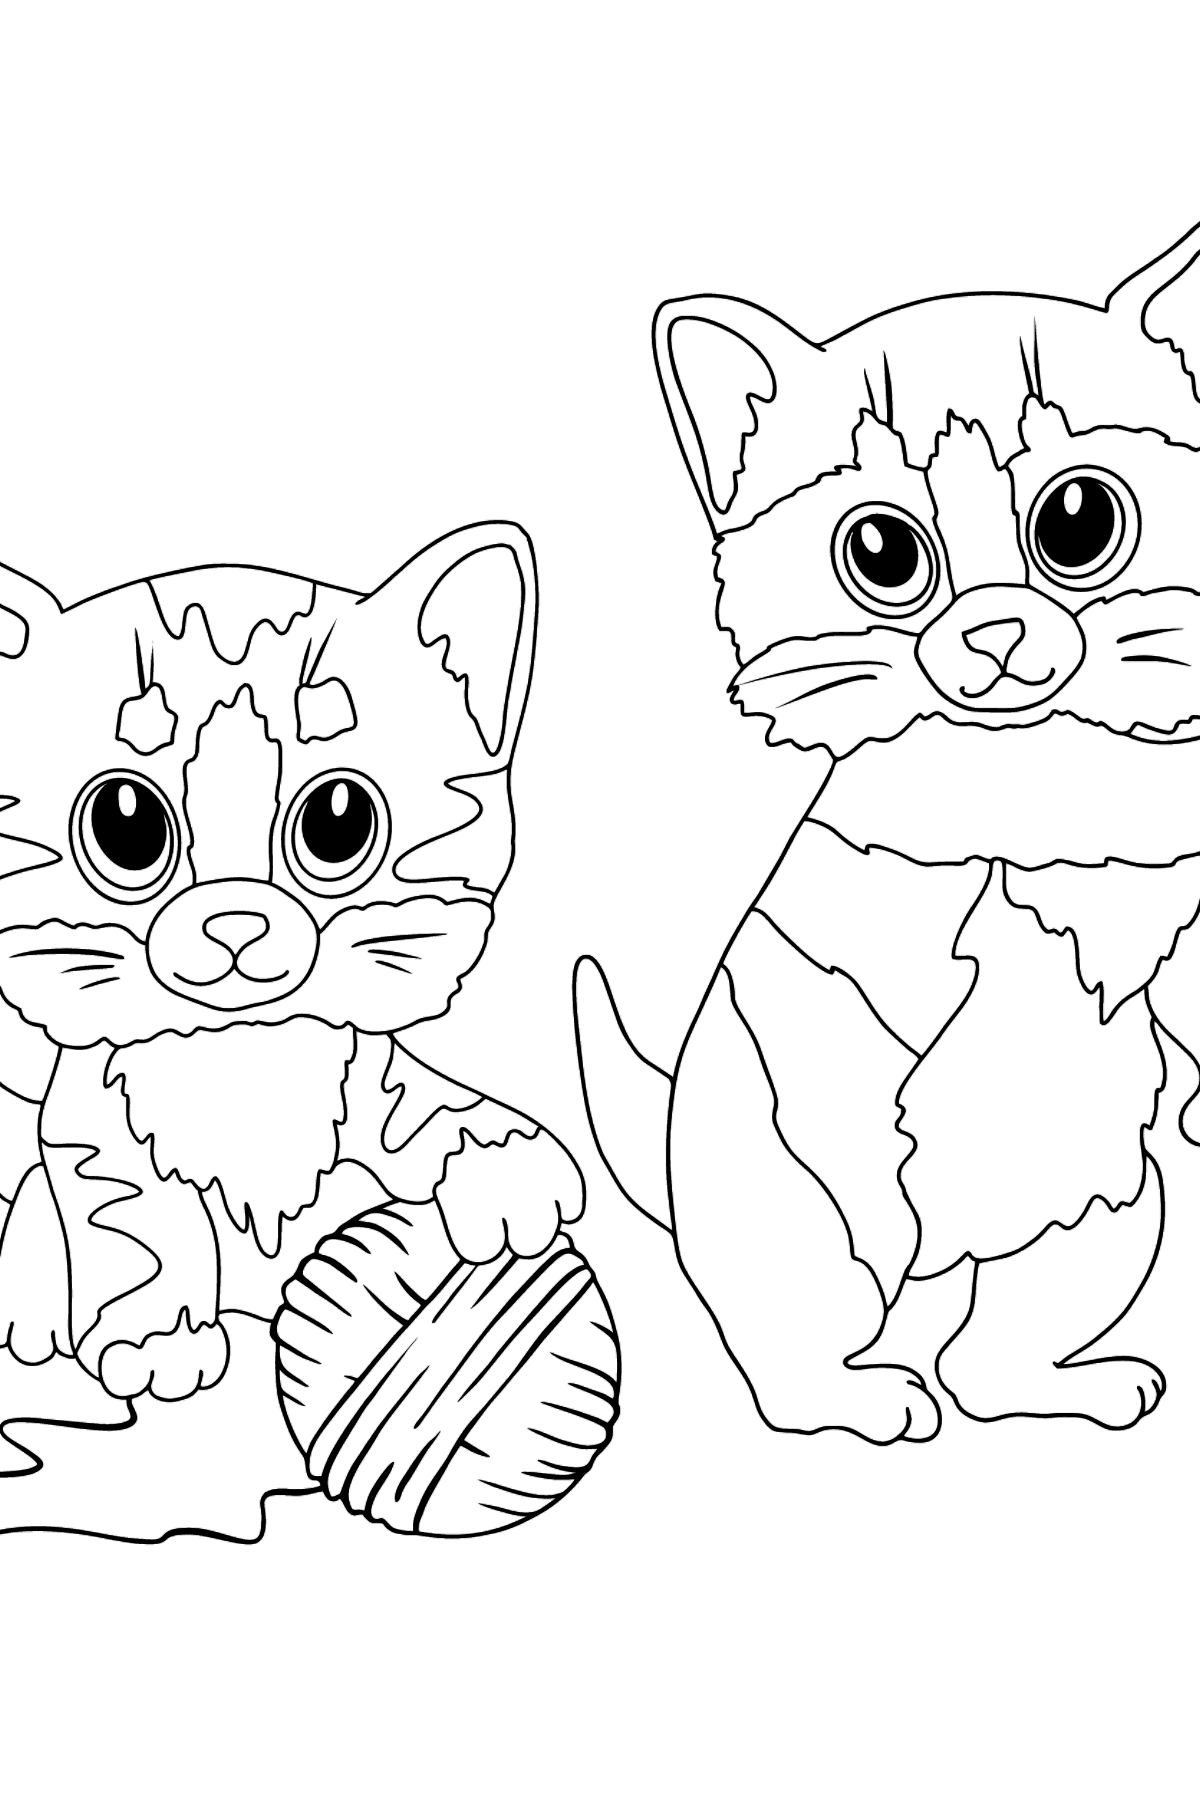 Розмальовка кошенята та клубок ниток - Розмальовки для дітей